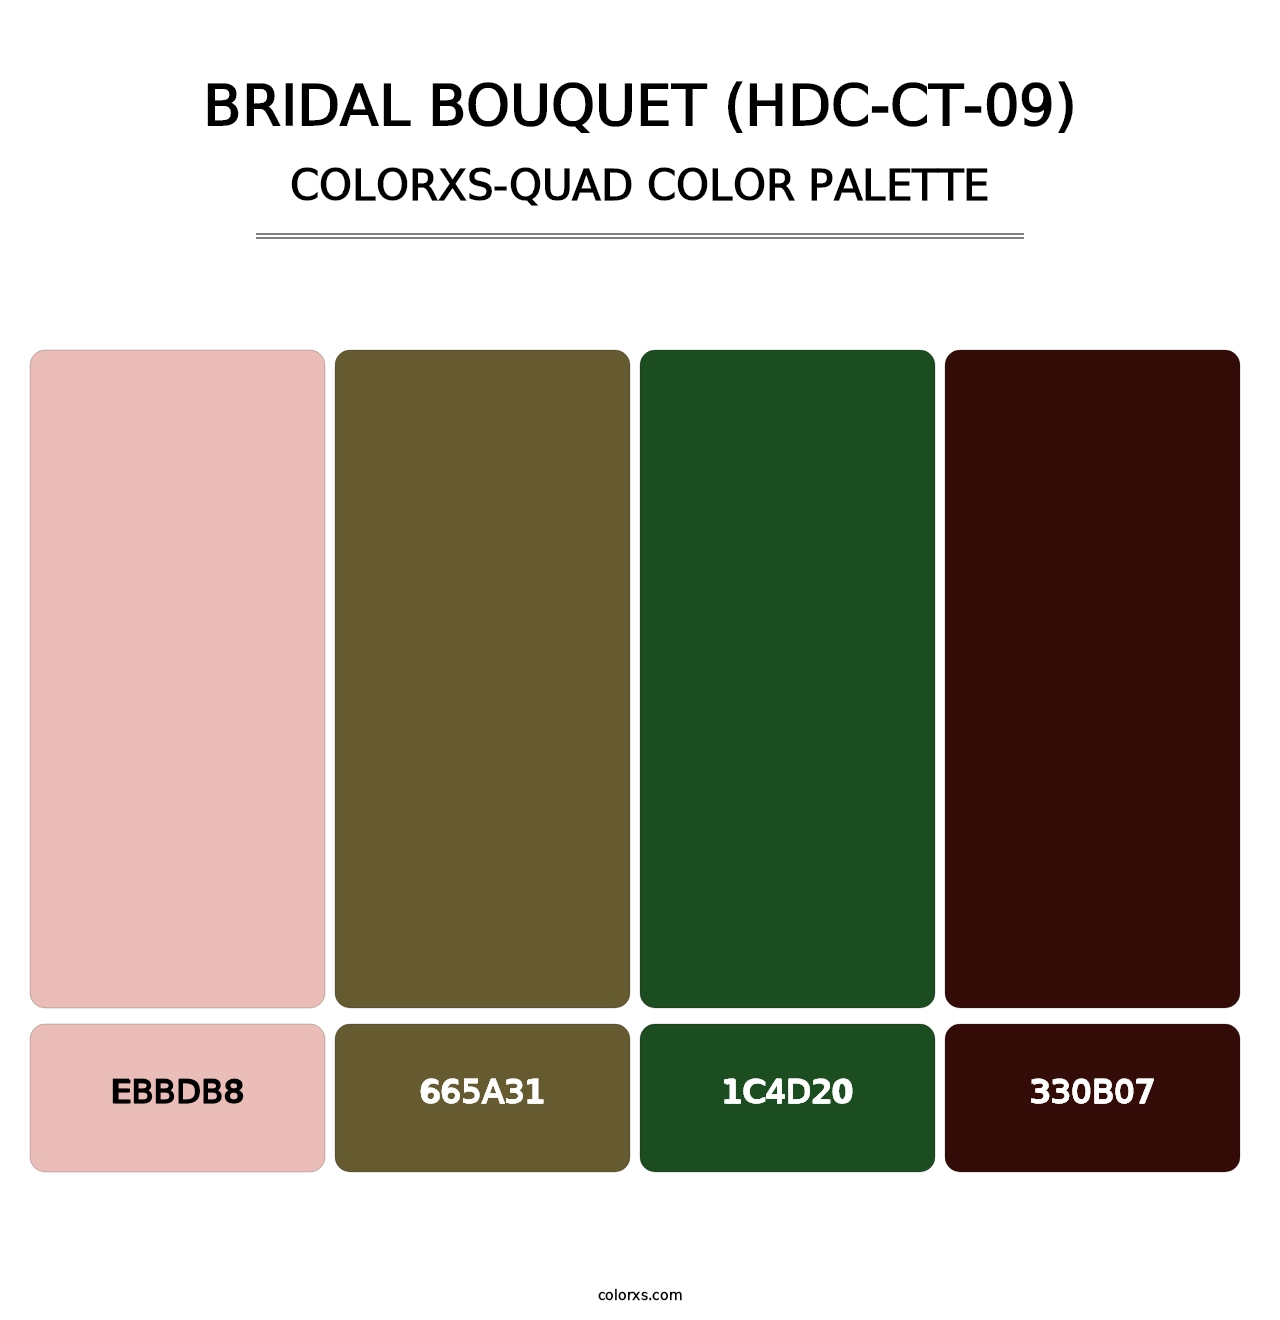 Bridal Bouquet (HDC-CT-09) - Colorxs Quad Palette